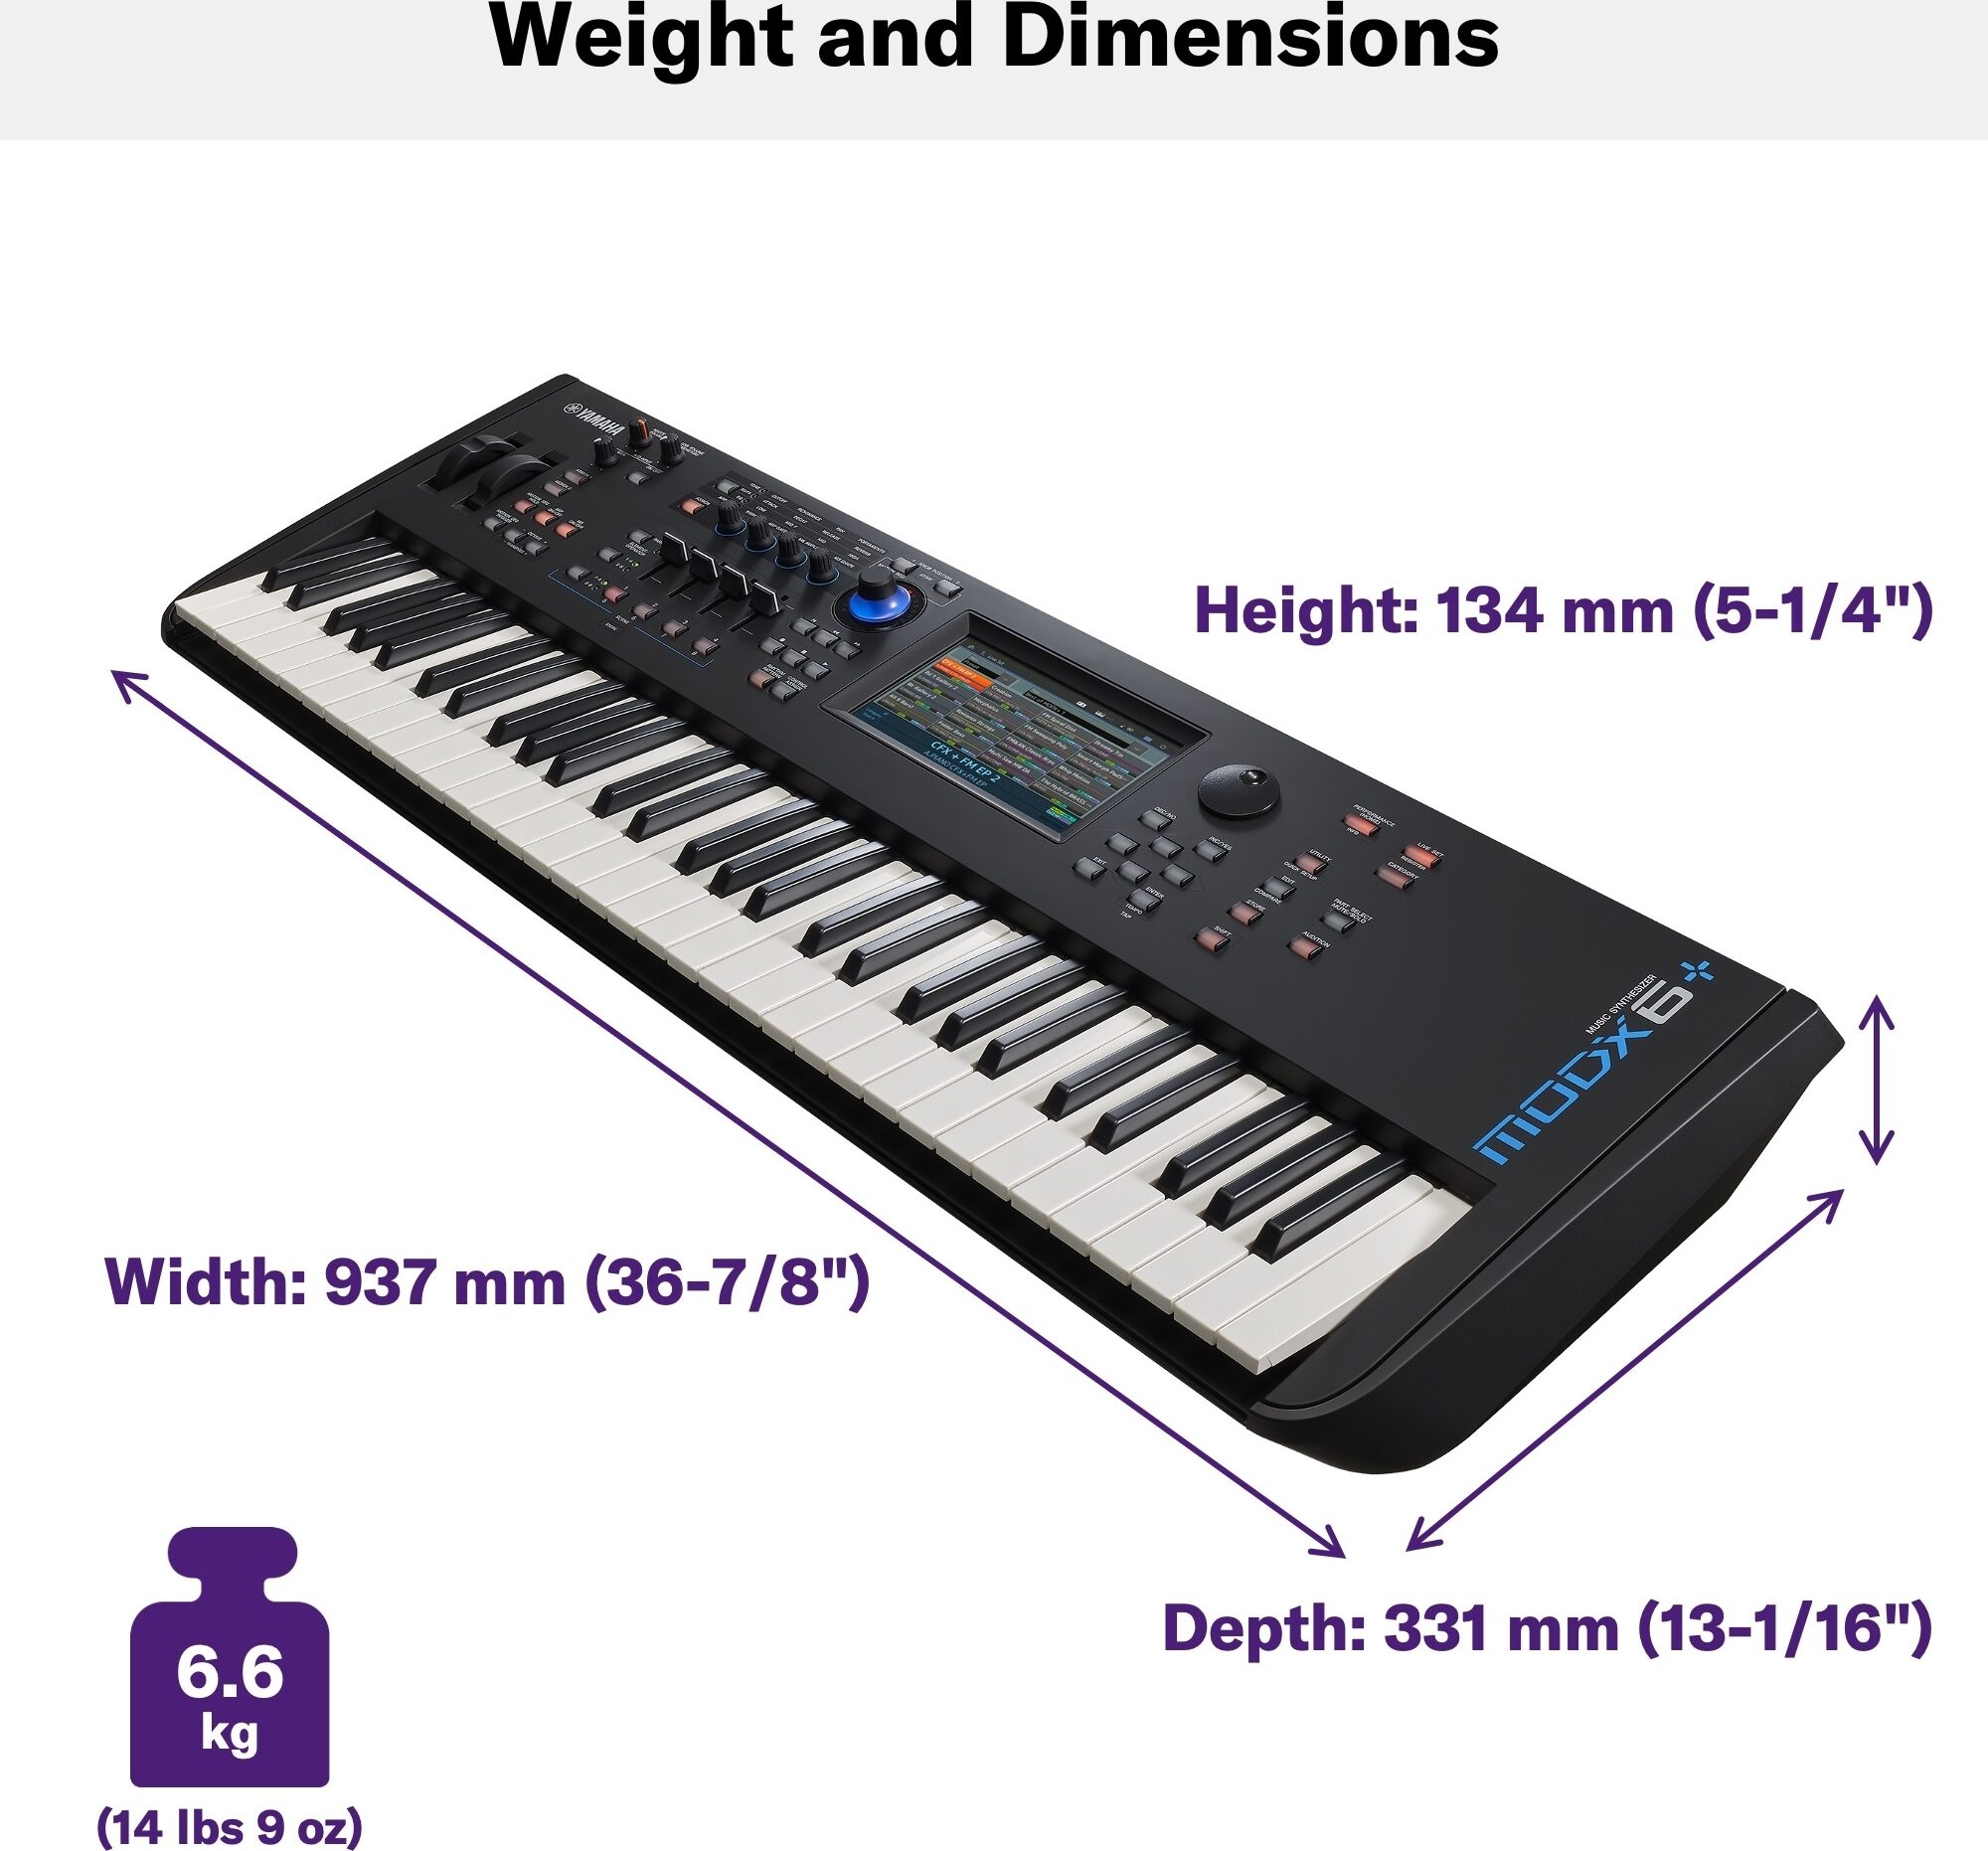 Yamaha MODX6 Plus Keyboard Synthesizer, 61-Key